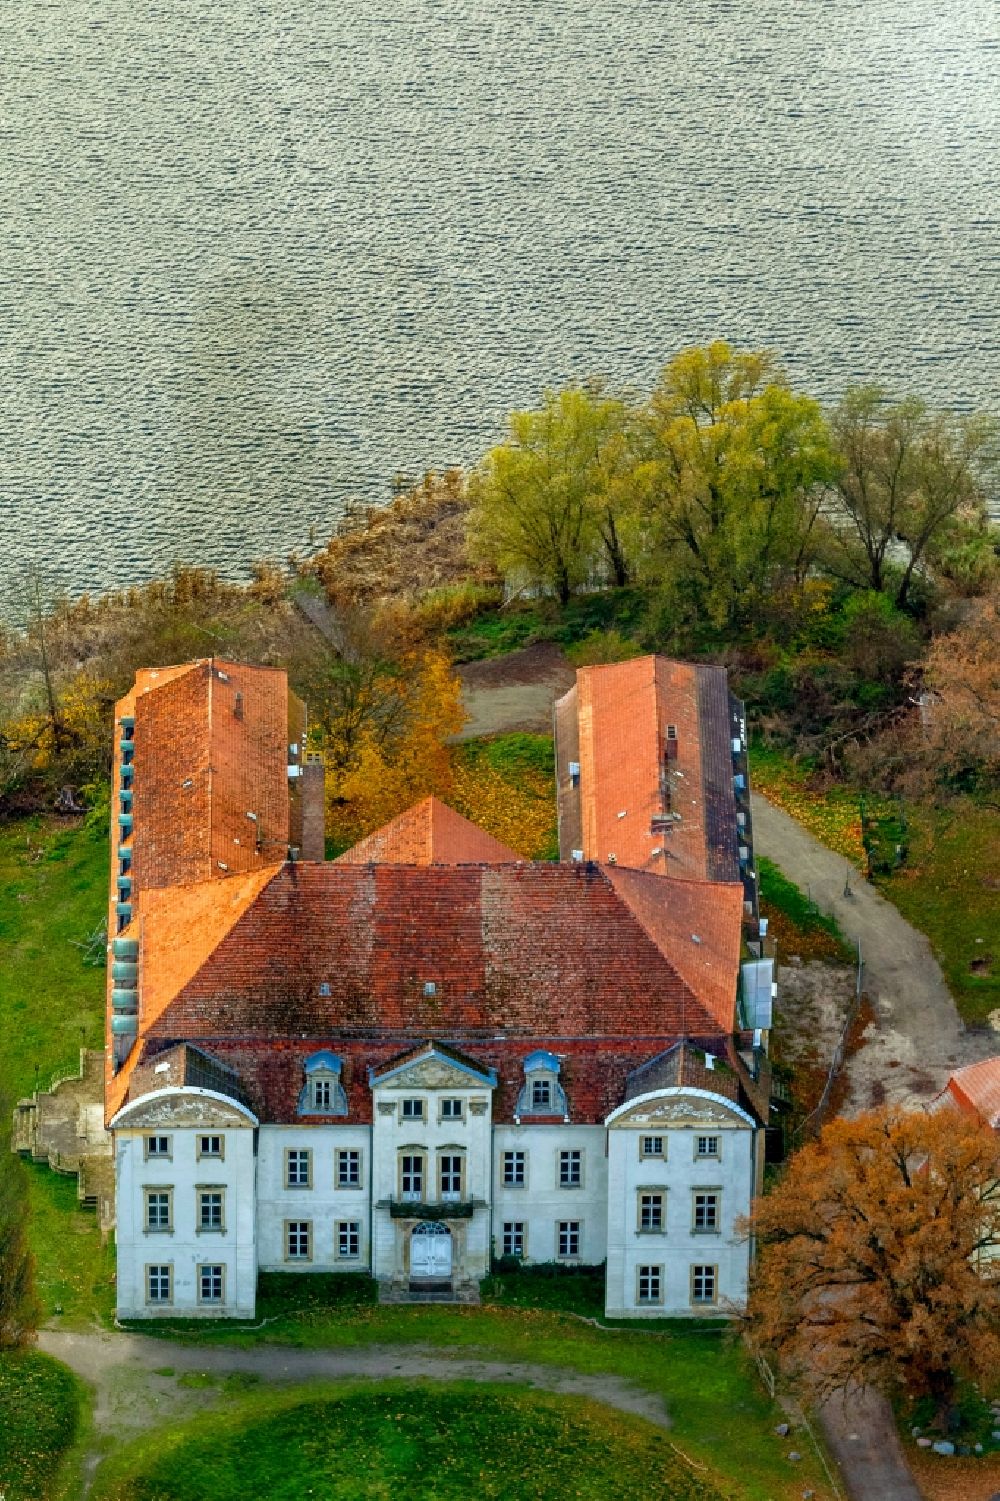 Ivenack von oben - Schloss Ivenack im Bundesland Mecklenburg-Vorpommern